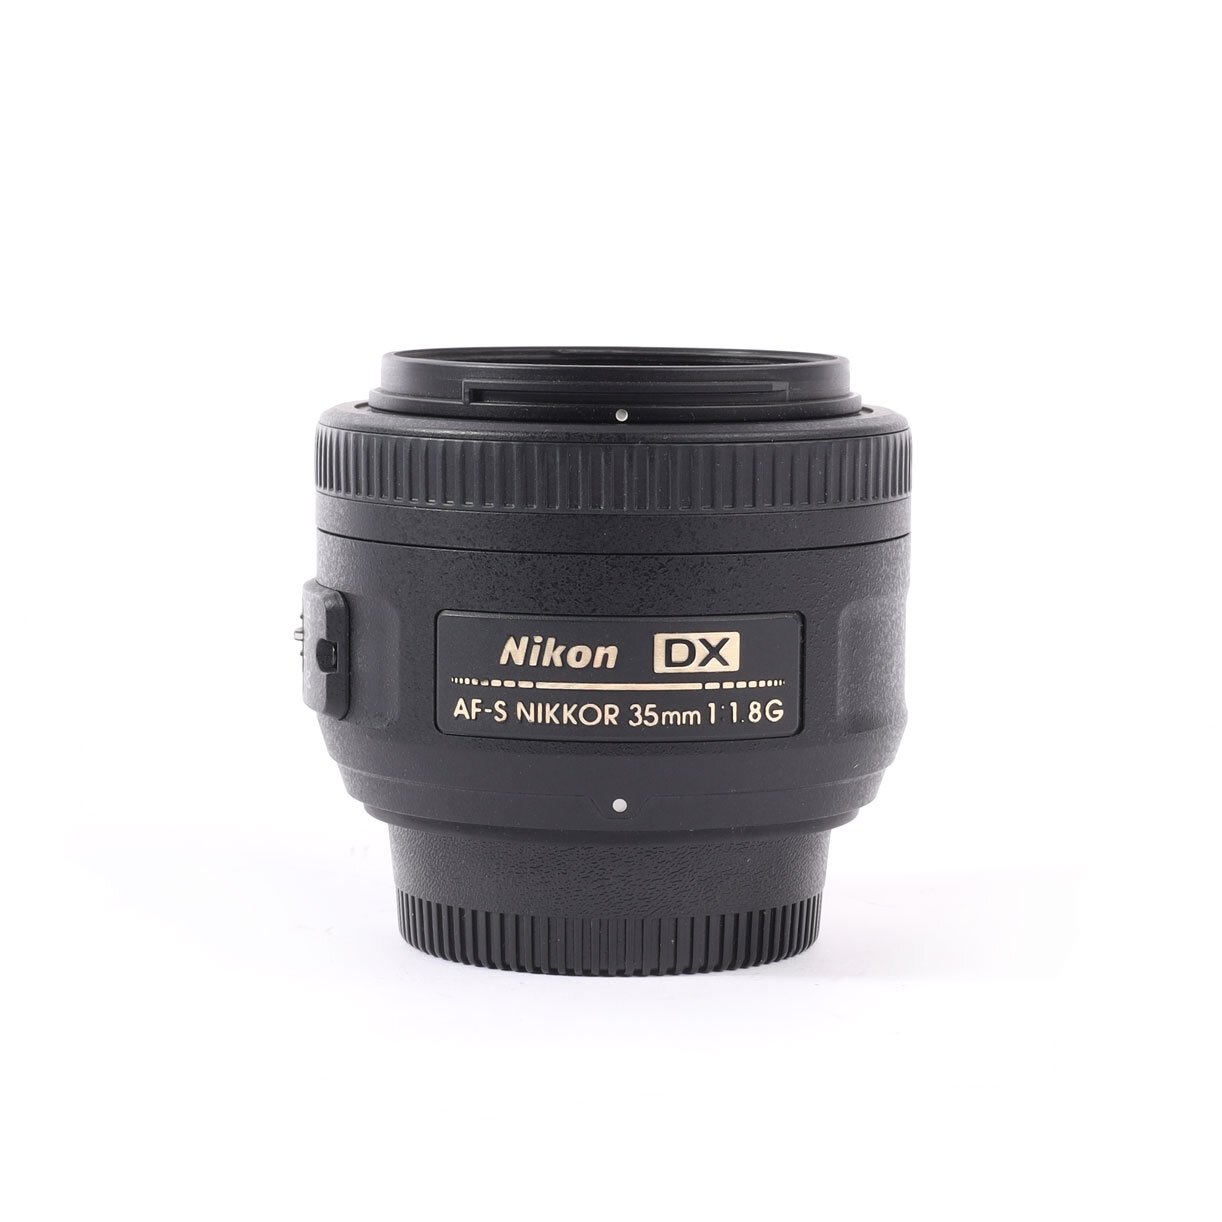 Nikon AFS Nikkor 35mm 1.8 G DX